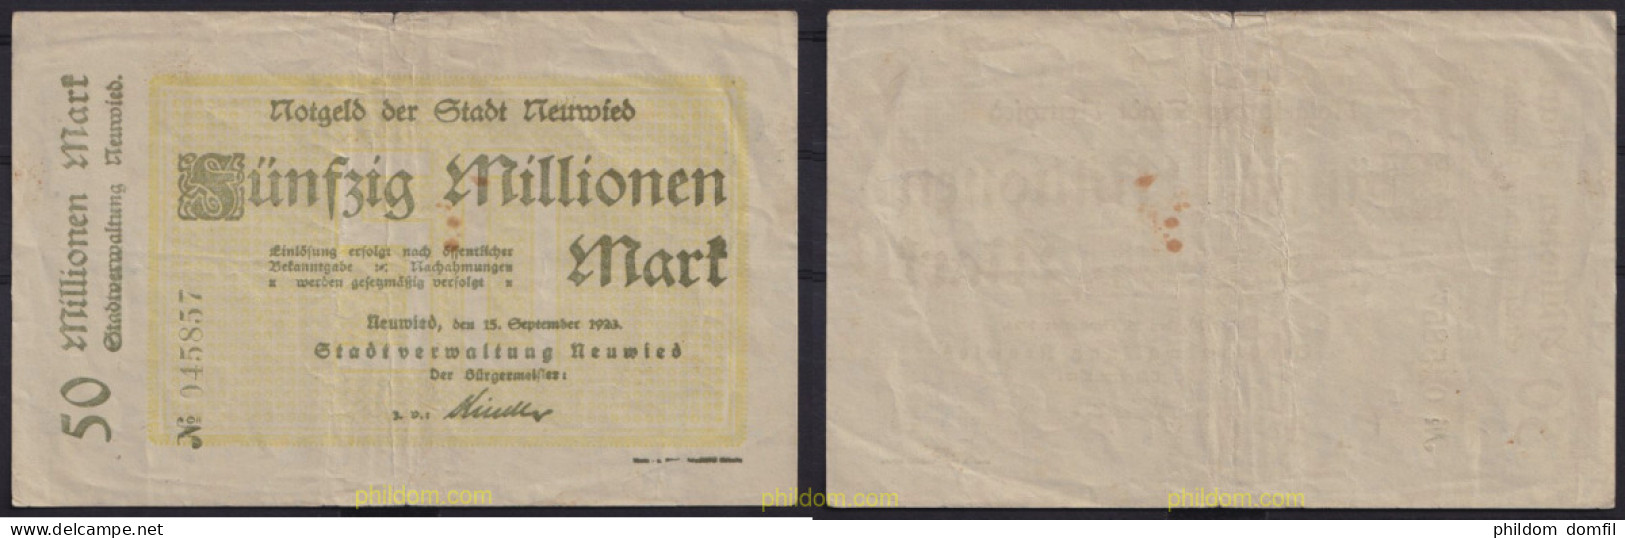 3681 ALEMANIA 1923 GERMANY 50000000 MARK NEUWIED 1923 - Amministrazione Del Debito